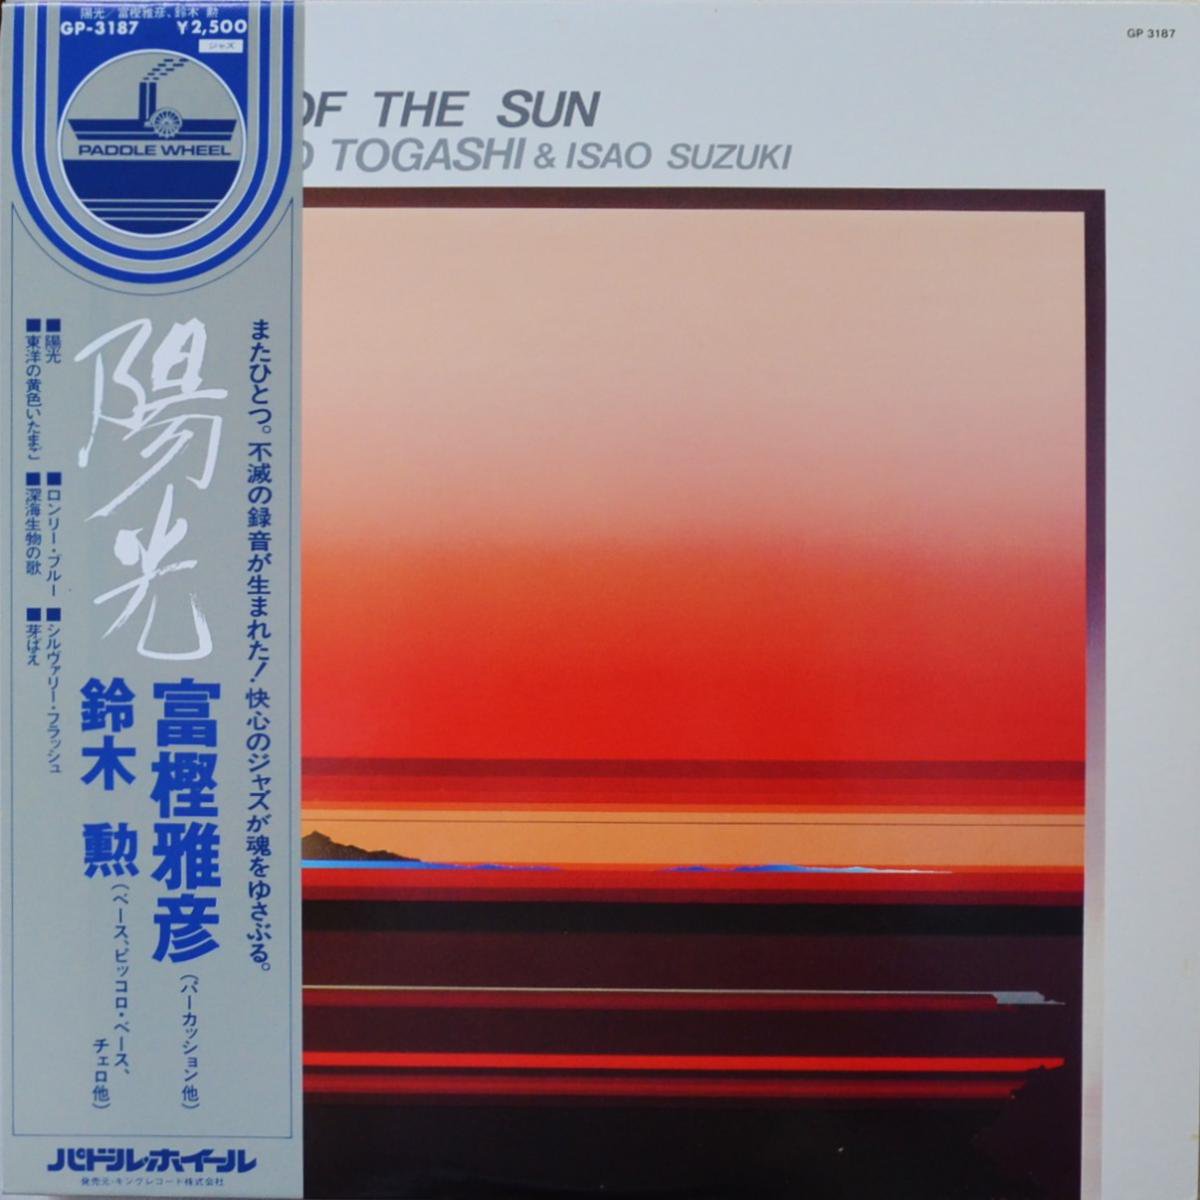 富樫雅彦 (MASAHIKO TOGASHI),鈴木勲 (ISAO SUZUKI) / 陽光 / A DAY OF THE SUN (LP) 